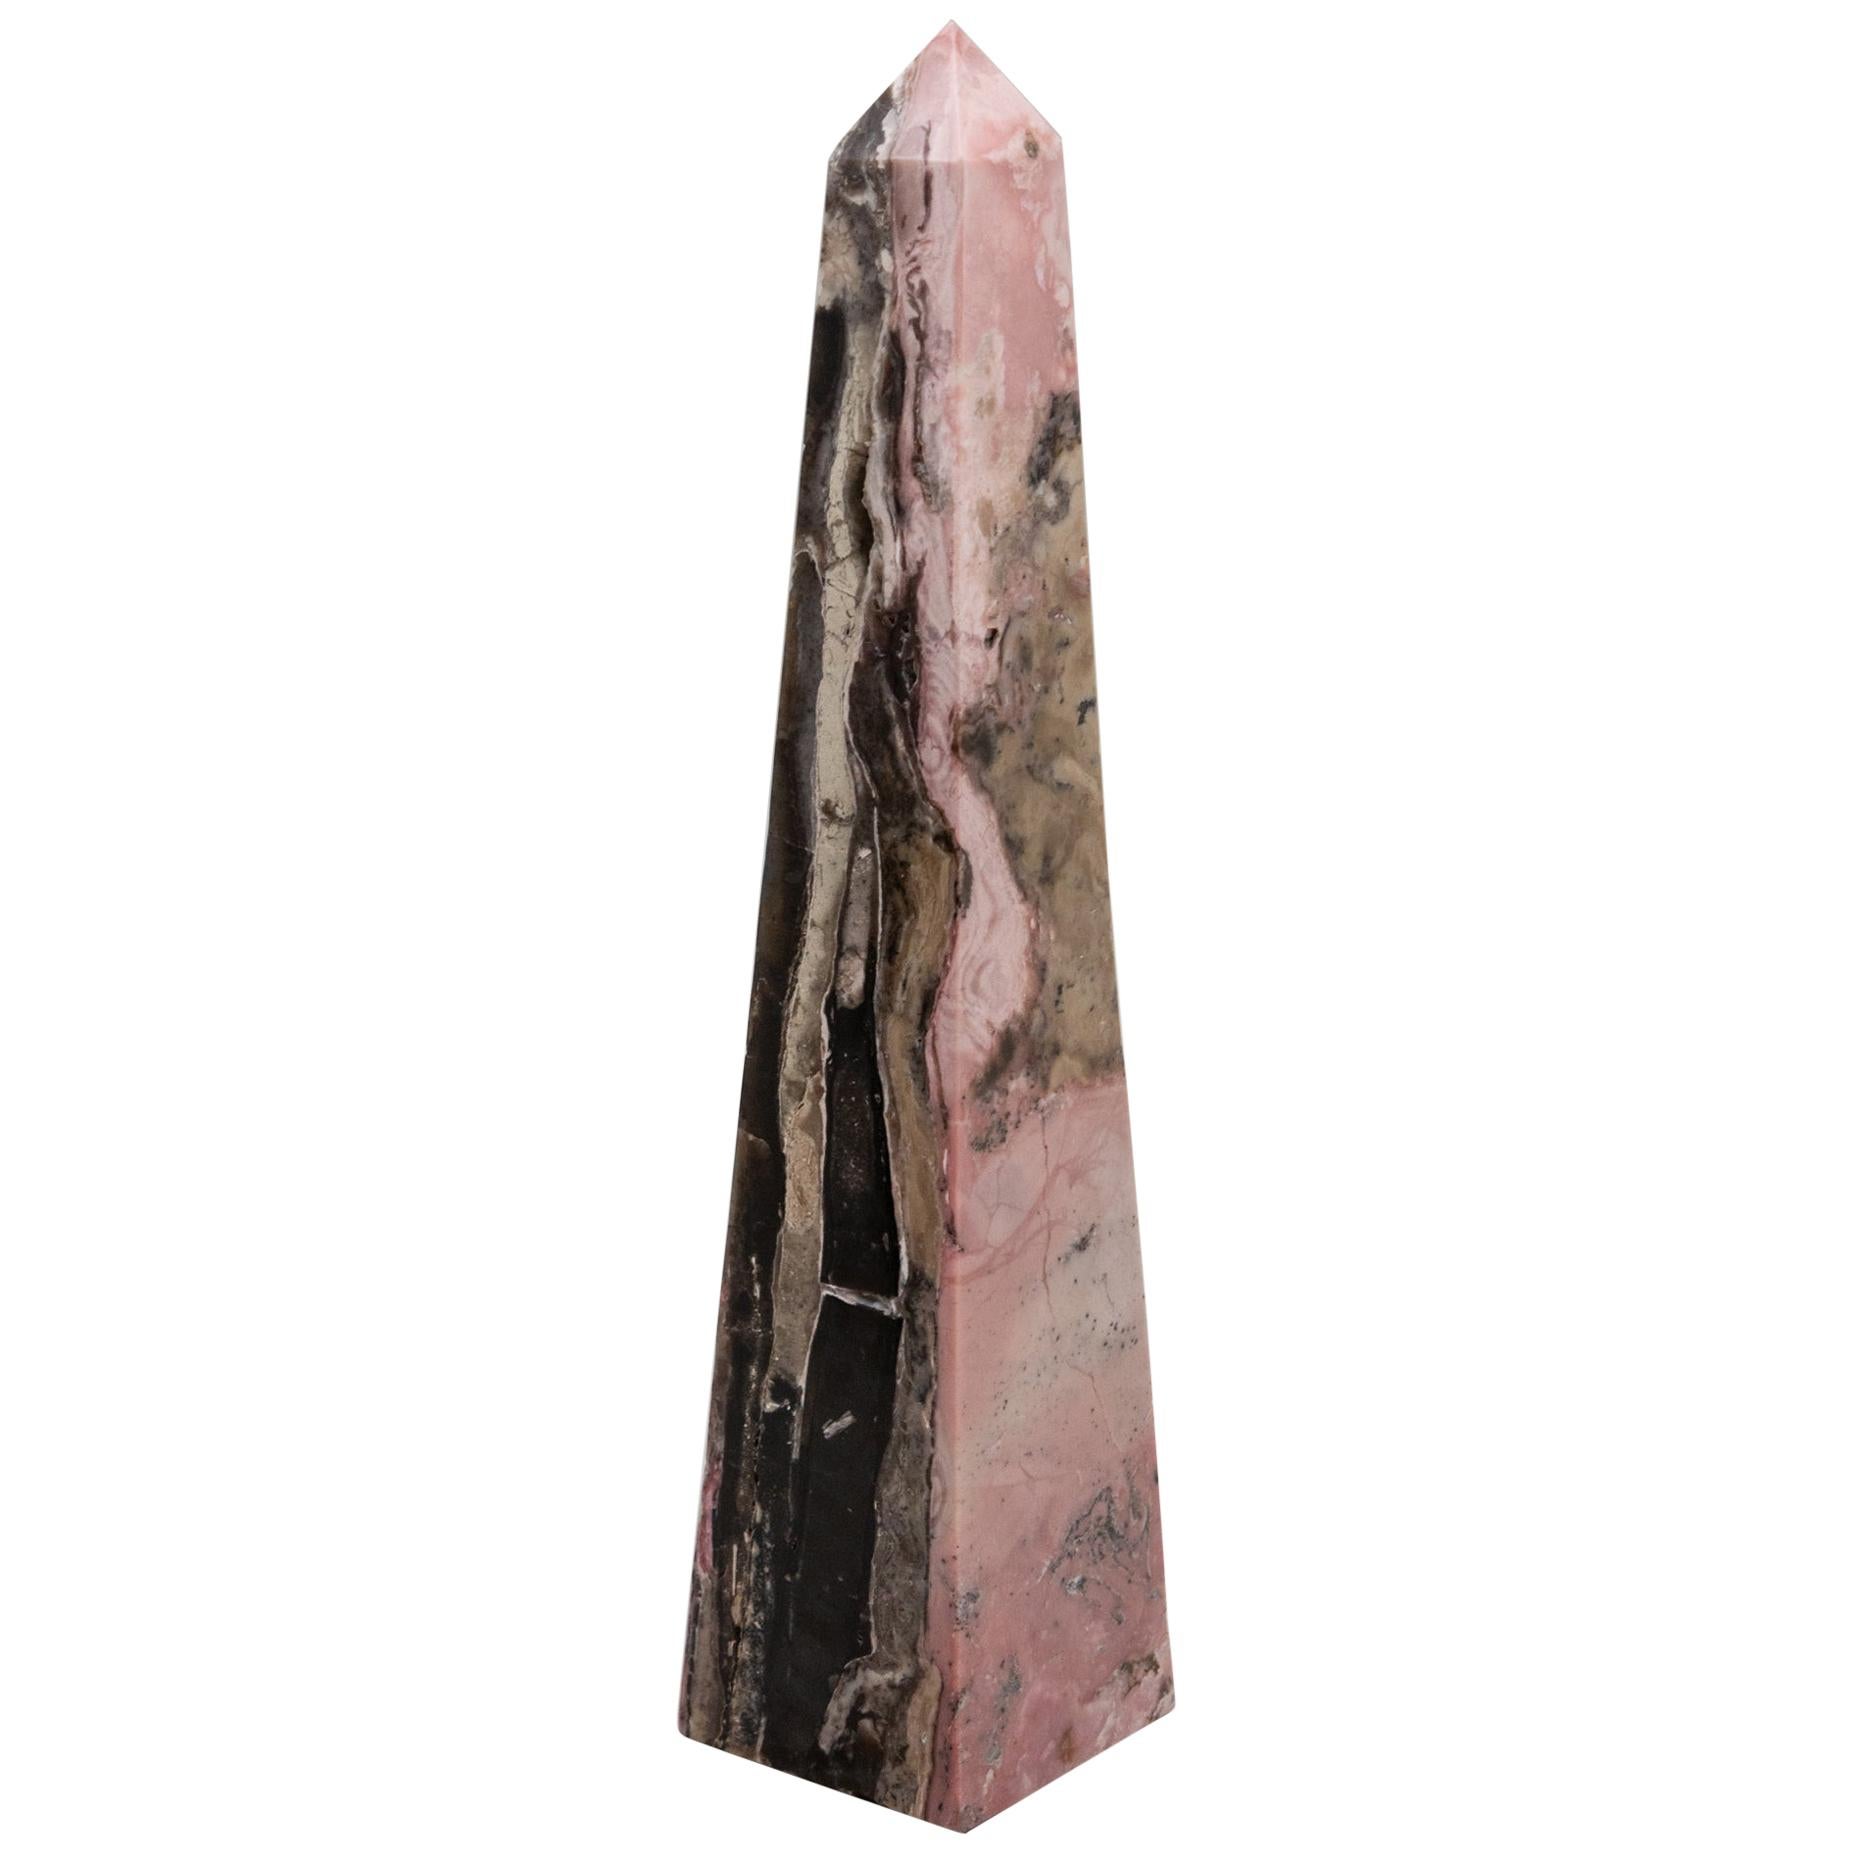 Pink Opal Obelisk